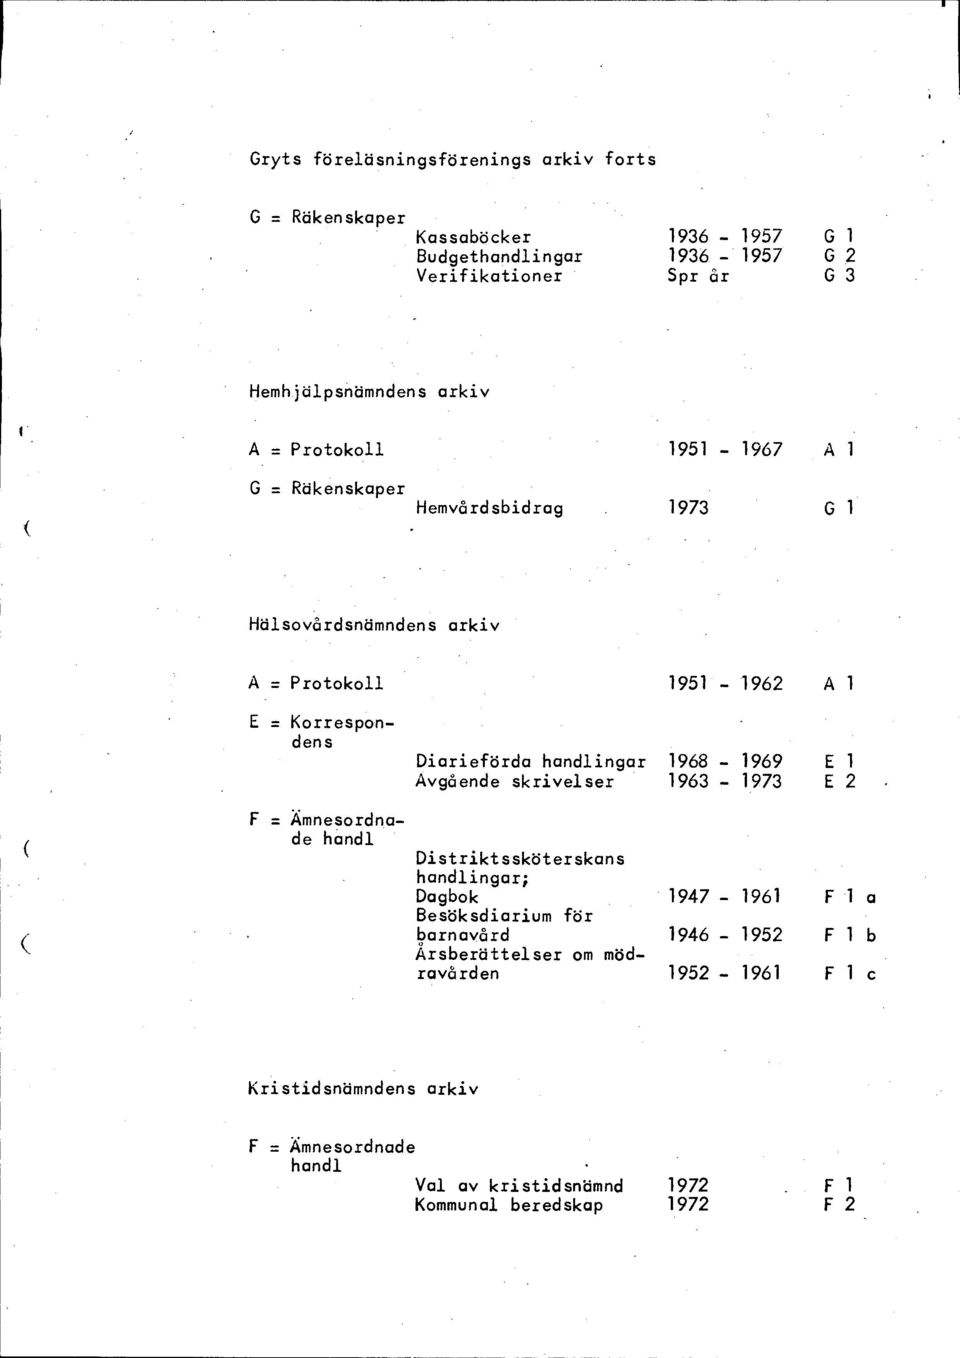 Diarieförda ingar 1968-1969 E 1 Avgående skrivelser 1963-1973 E 2 Distriktssköterskans ingar; Dagbok 1947-1961 F 1 a Besöksdiarium för